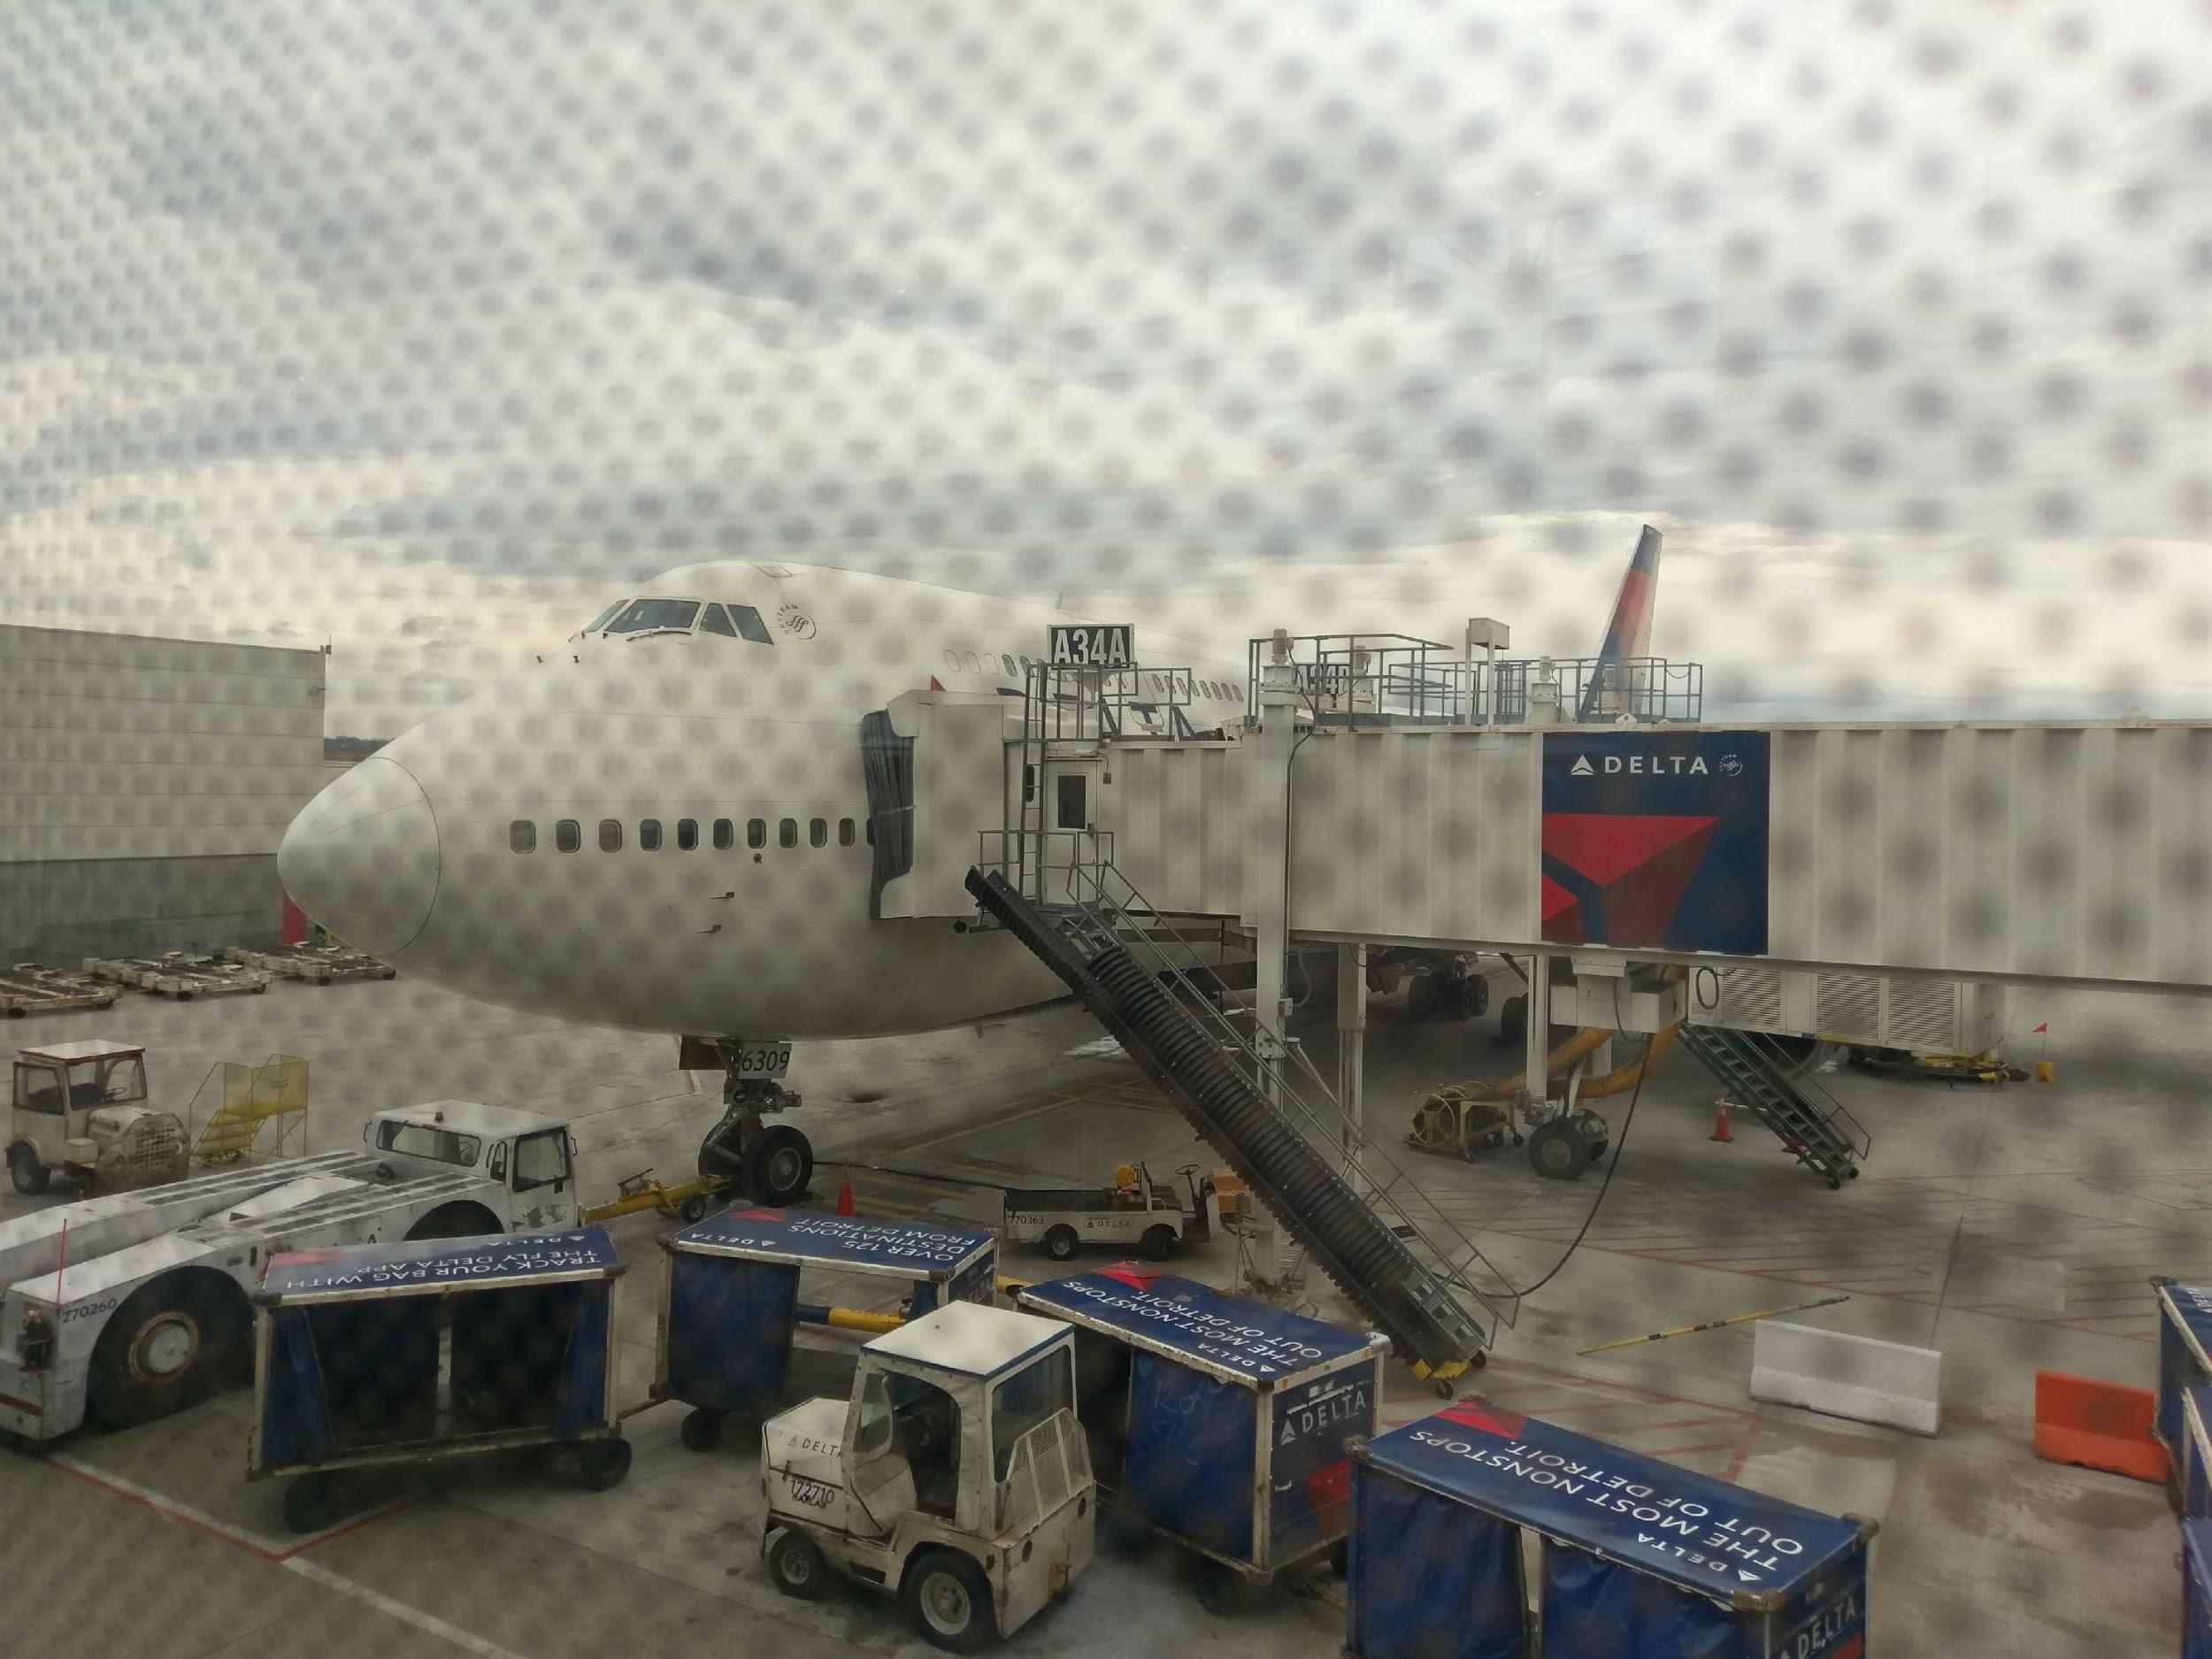 Delta 747 